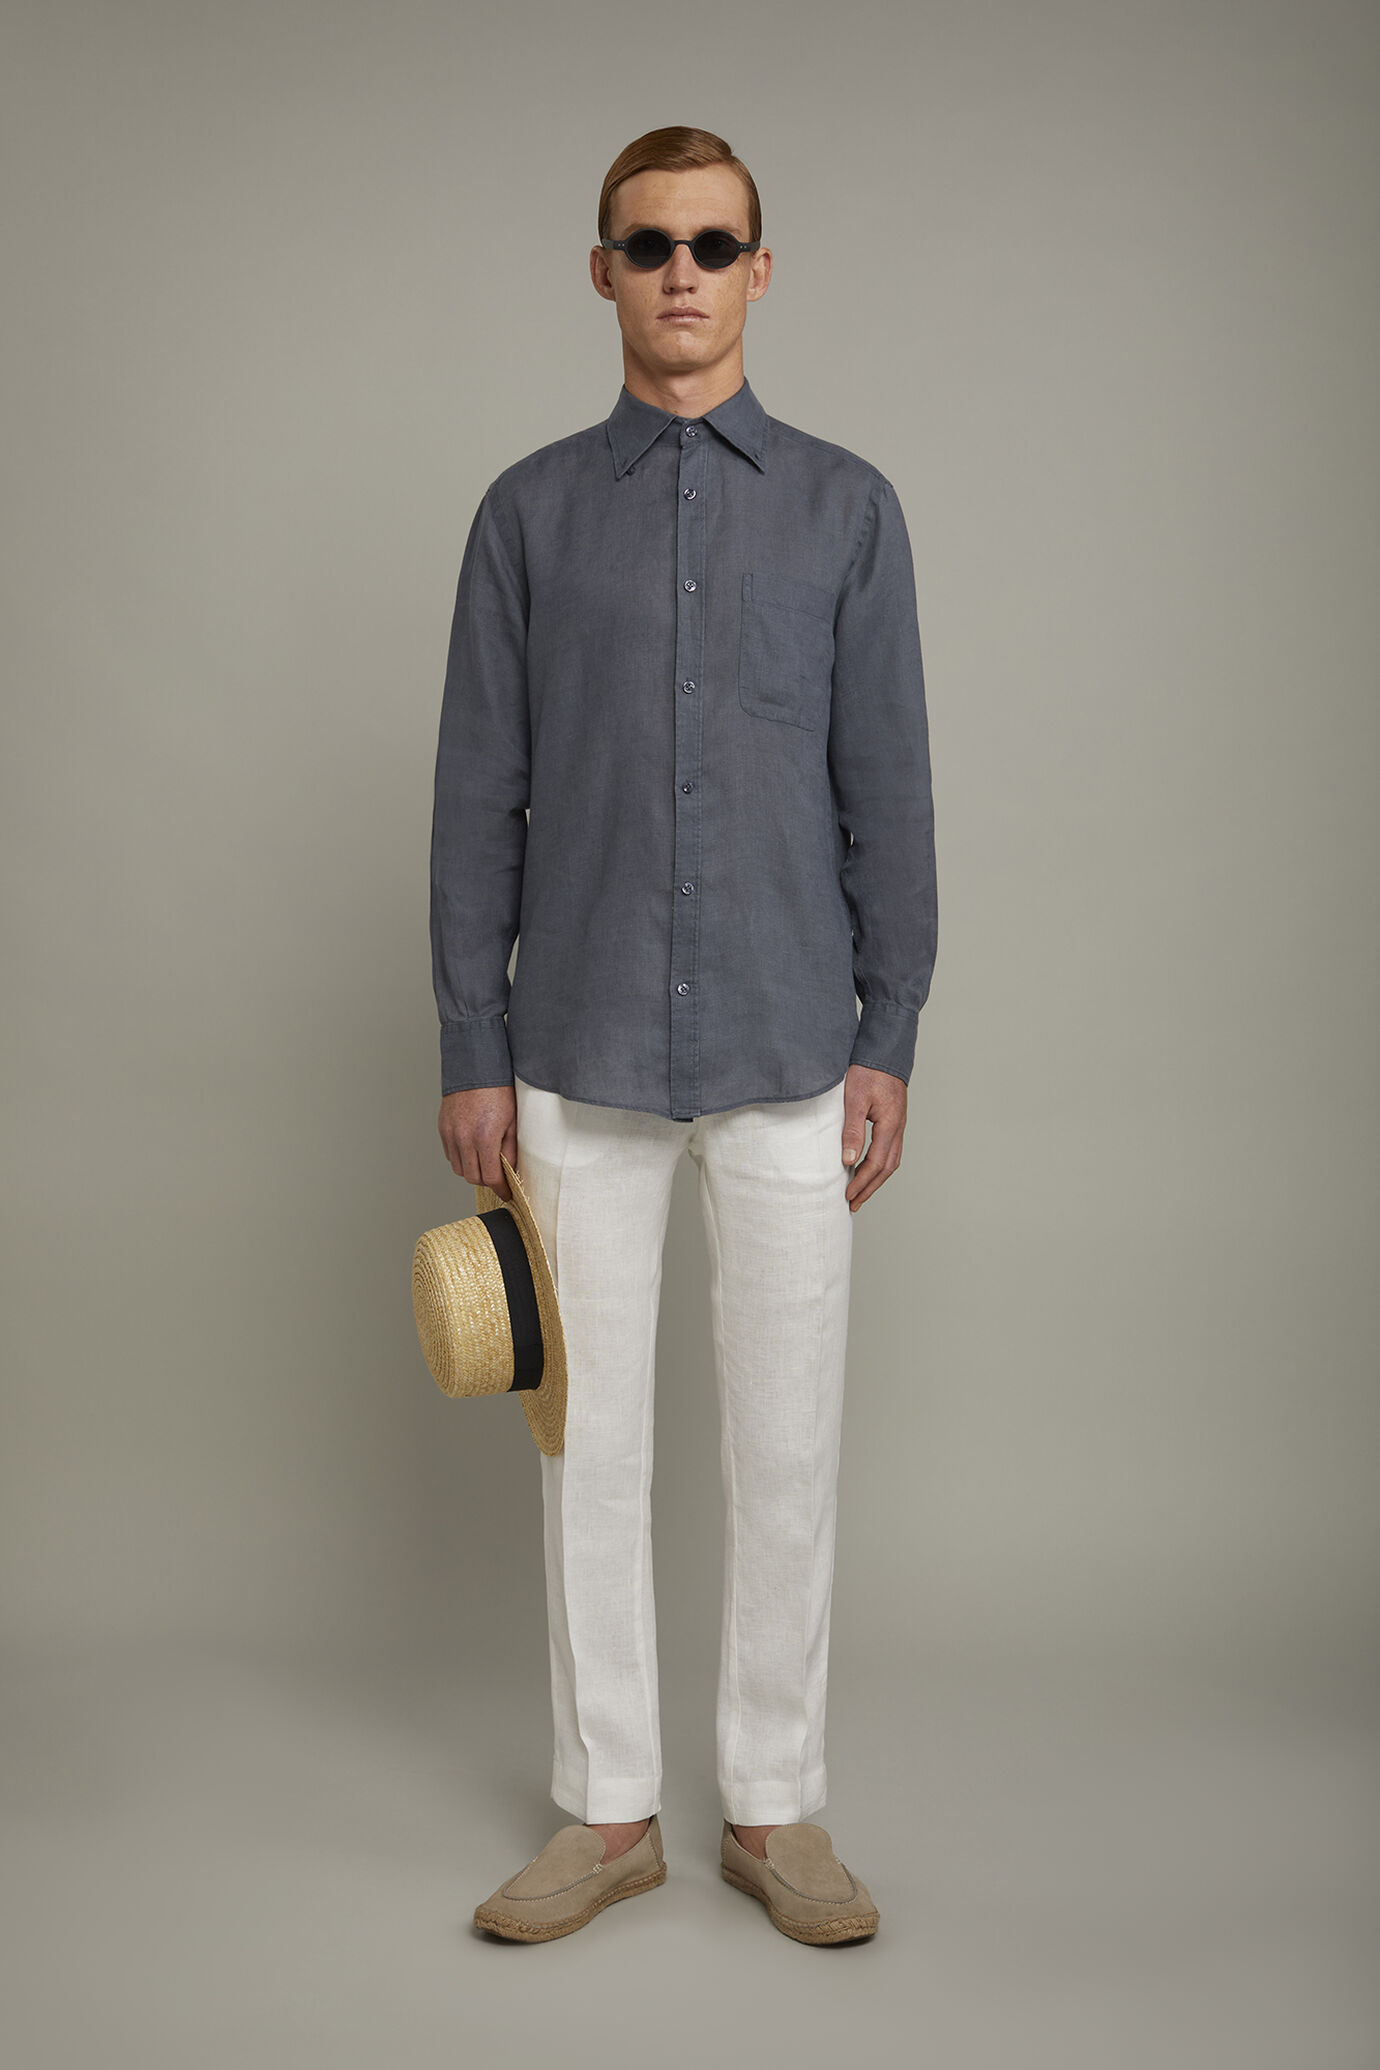 Pantalone chino 100% lino regular fit image number 0